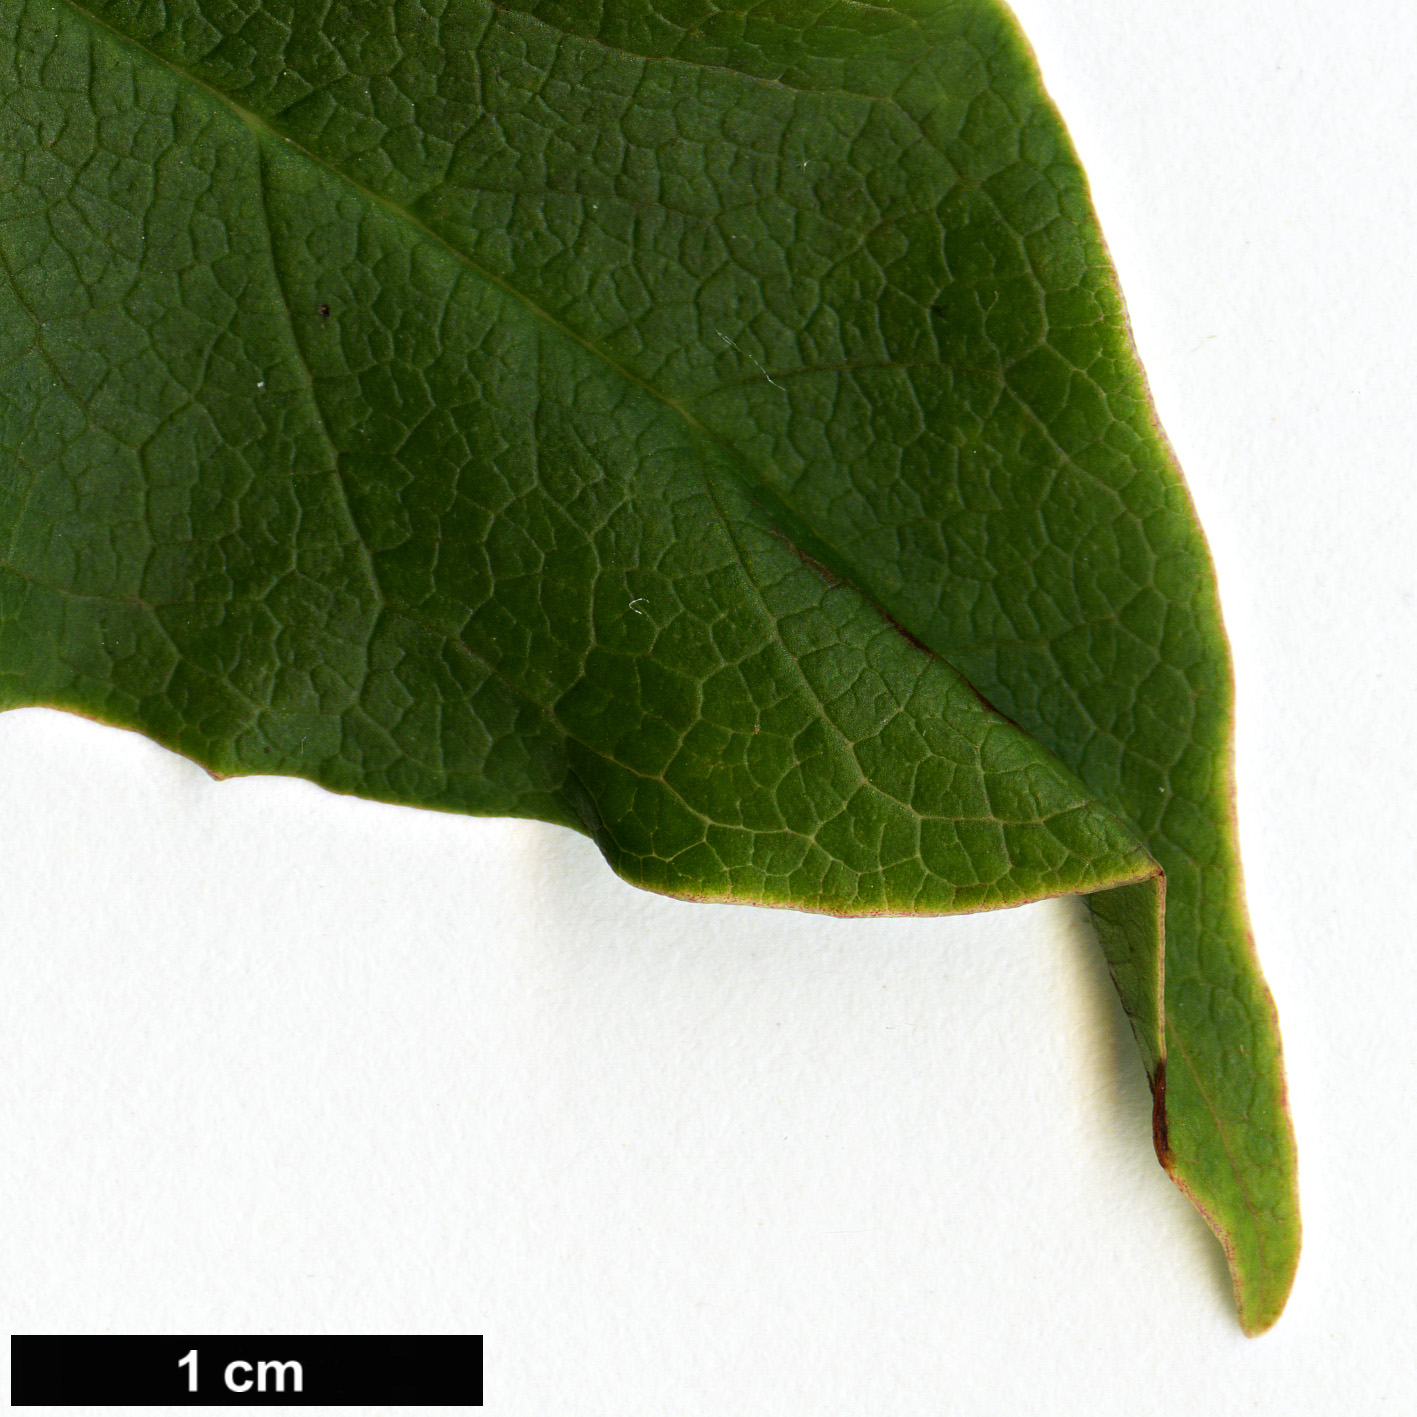 High resolution image: Family: Magnoliaceae - Genus: Magnolia - Taxon: sinostellata